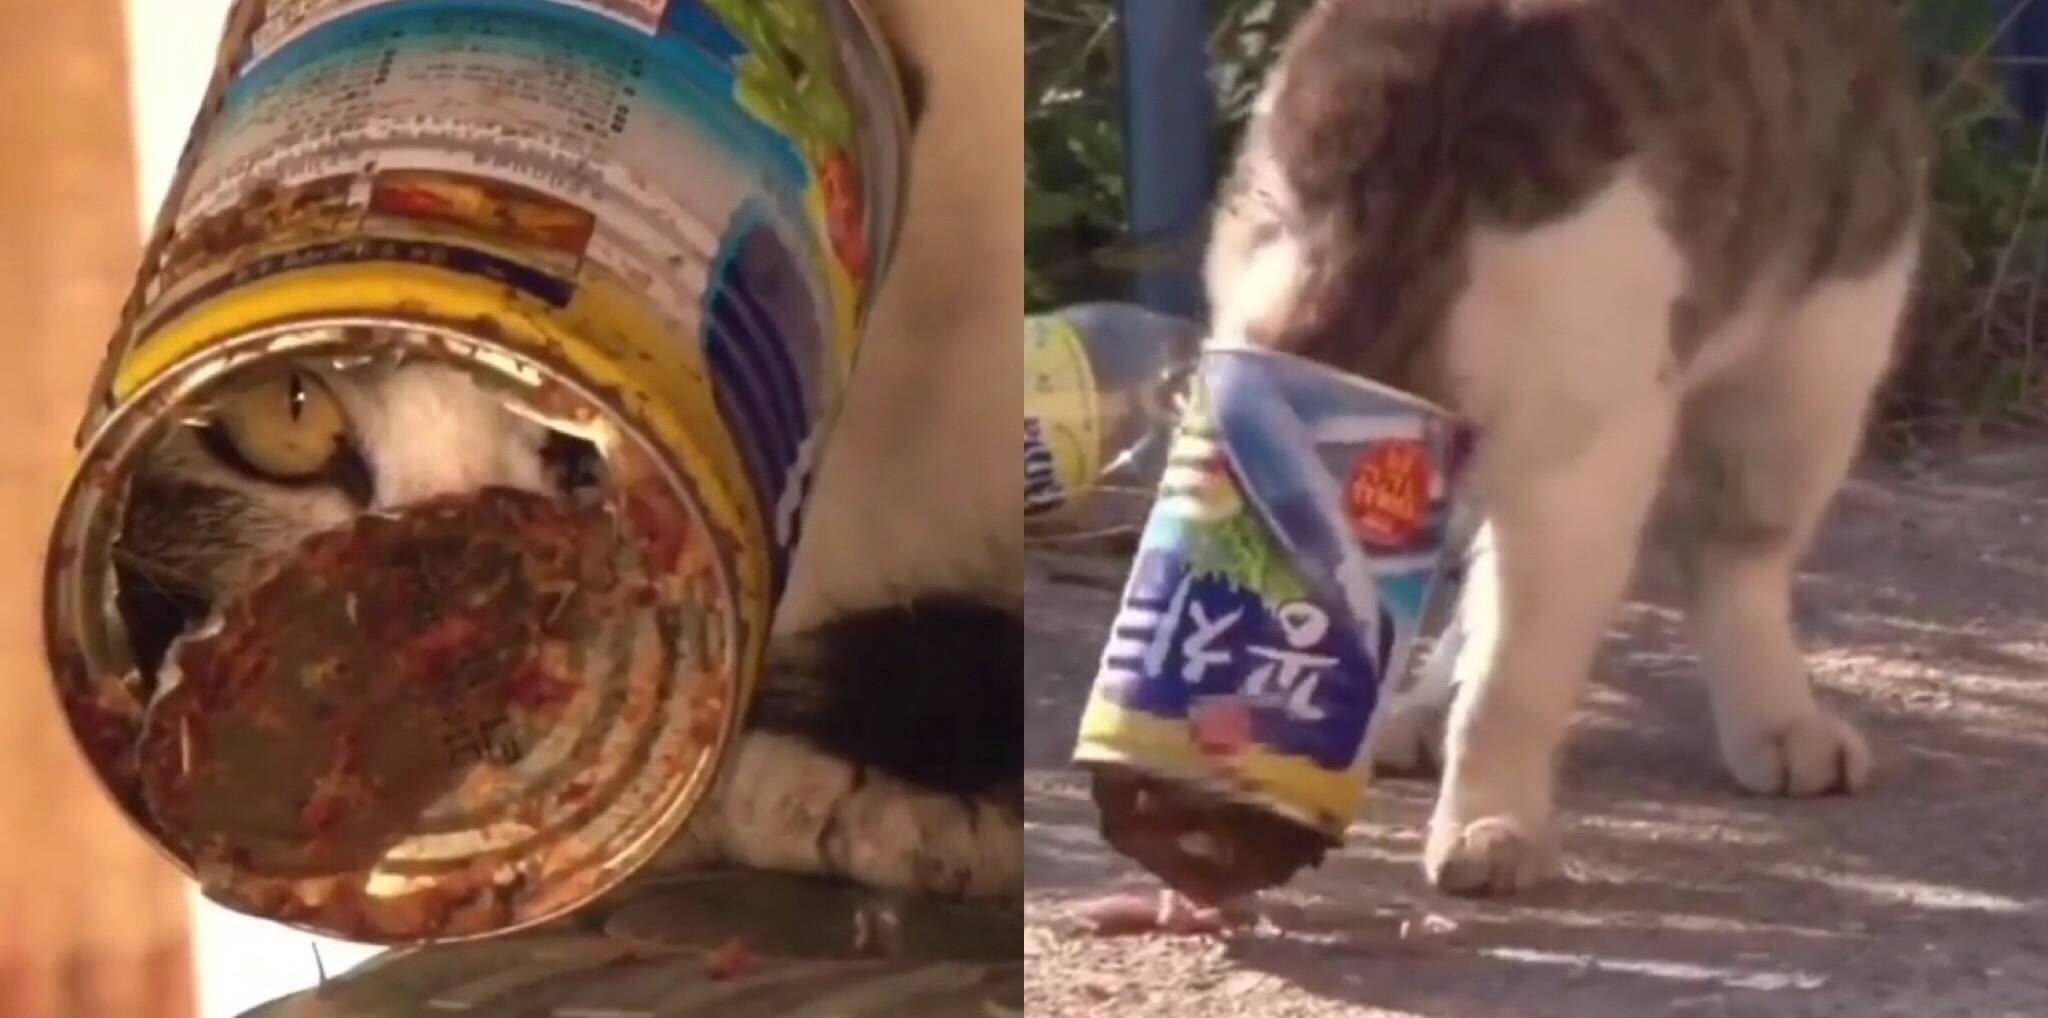 Если кот съел пакет: что делать и нужно ли беспокоиться